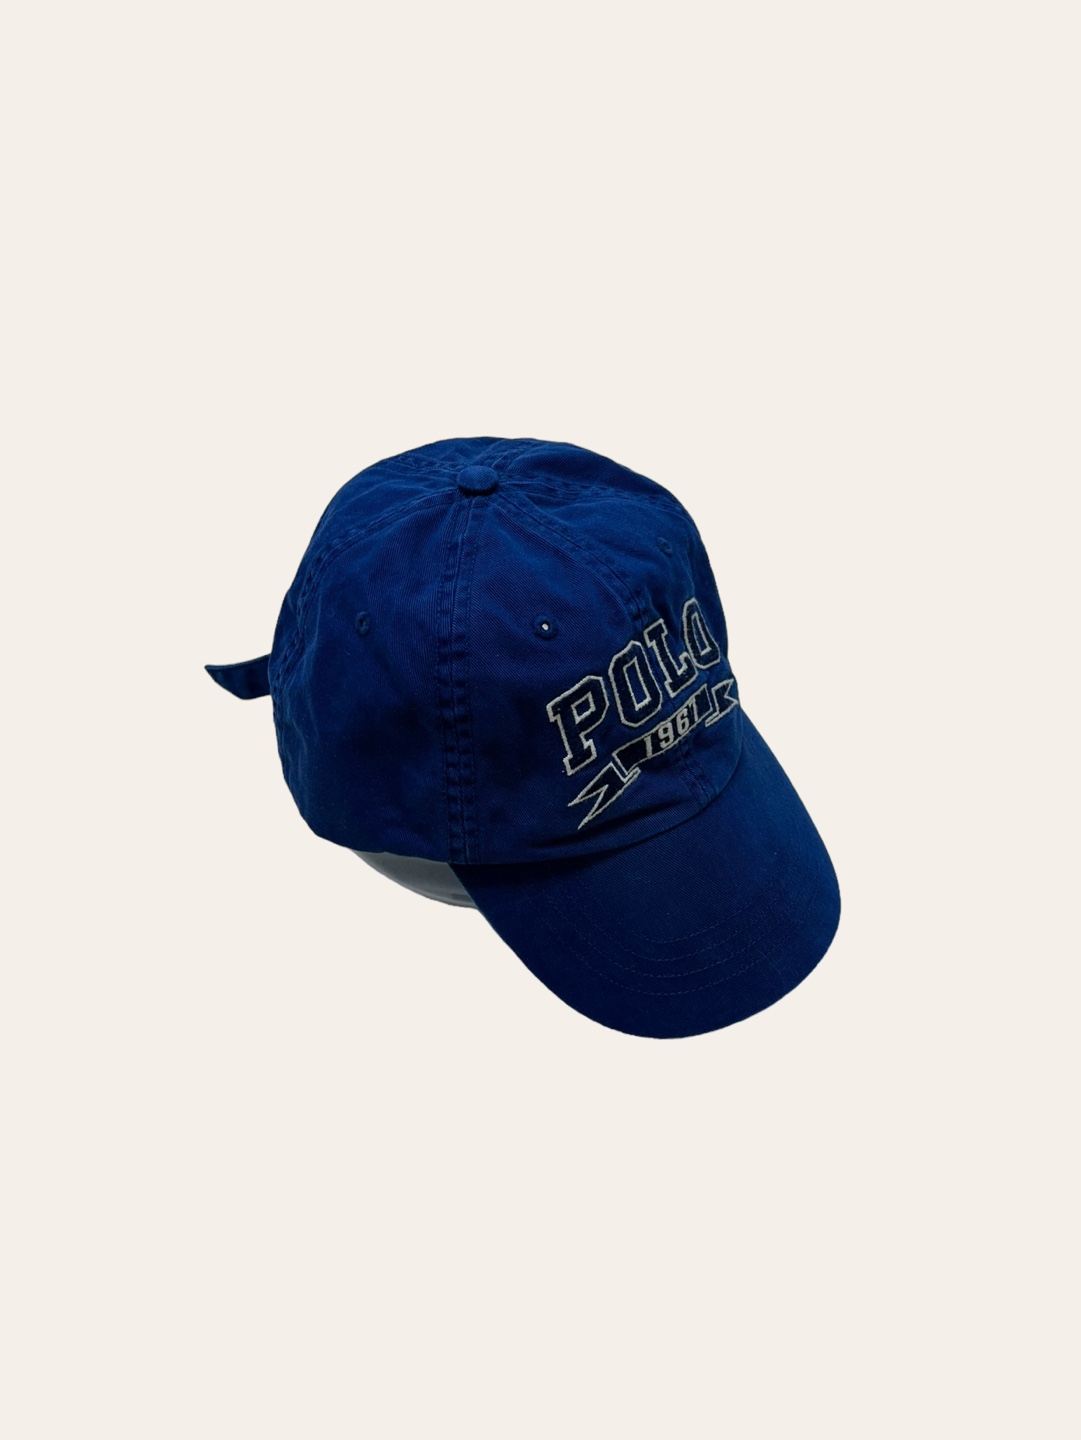 Polo ralph lauren blue spell out cap